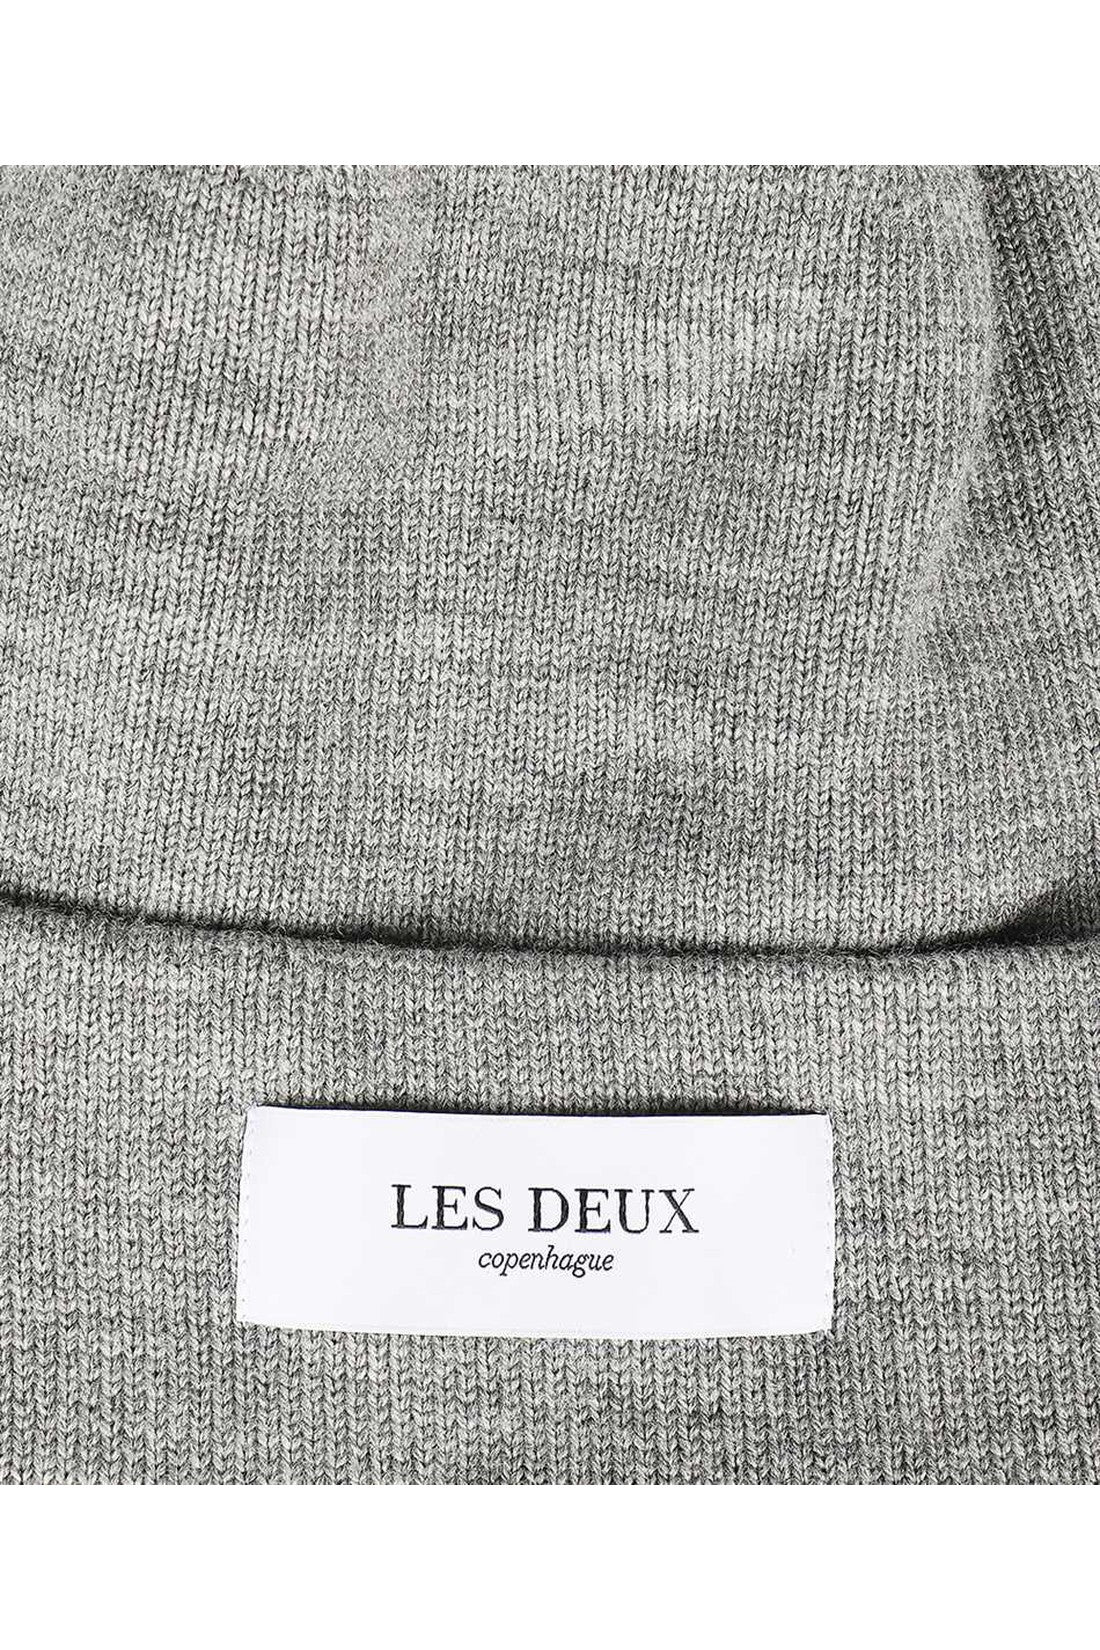 Merino wool hat-Les Deux-OUTLET-SALE-TU-ARCHIVIST